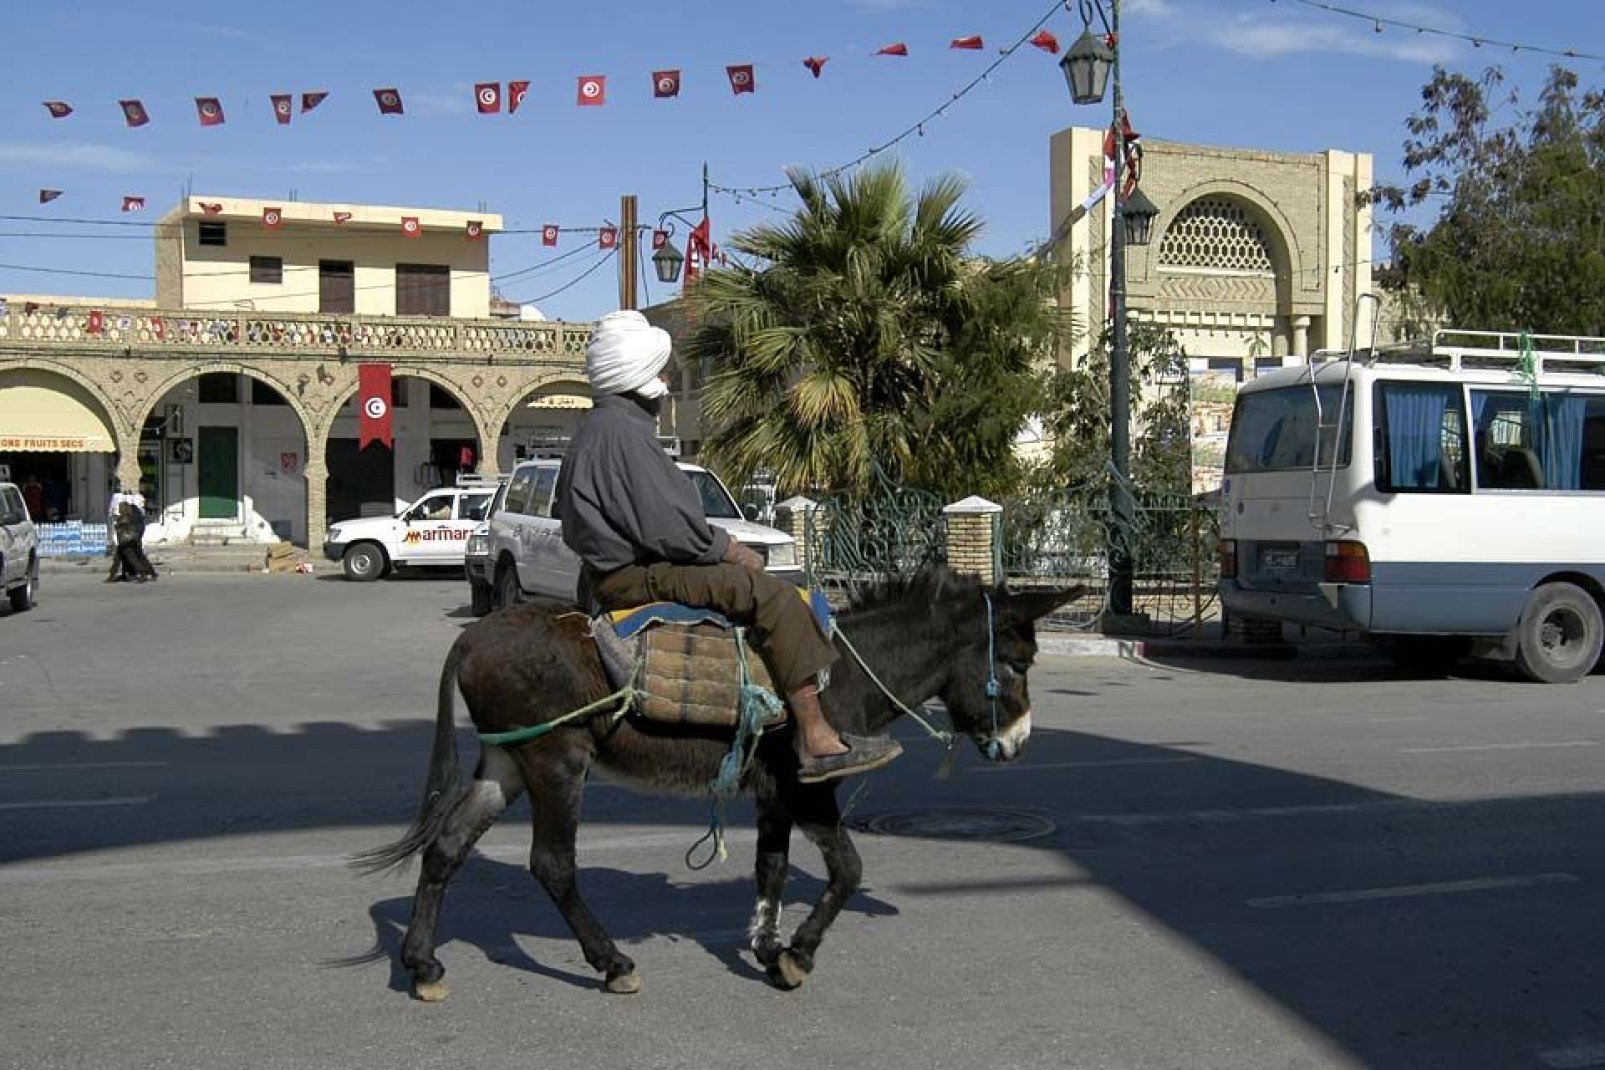 Chef-lieu du sud-ouest de la Tunisie, la petite ville de Tozeur accueille plus de 70 000 habitants.